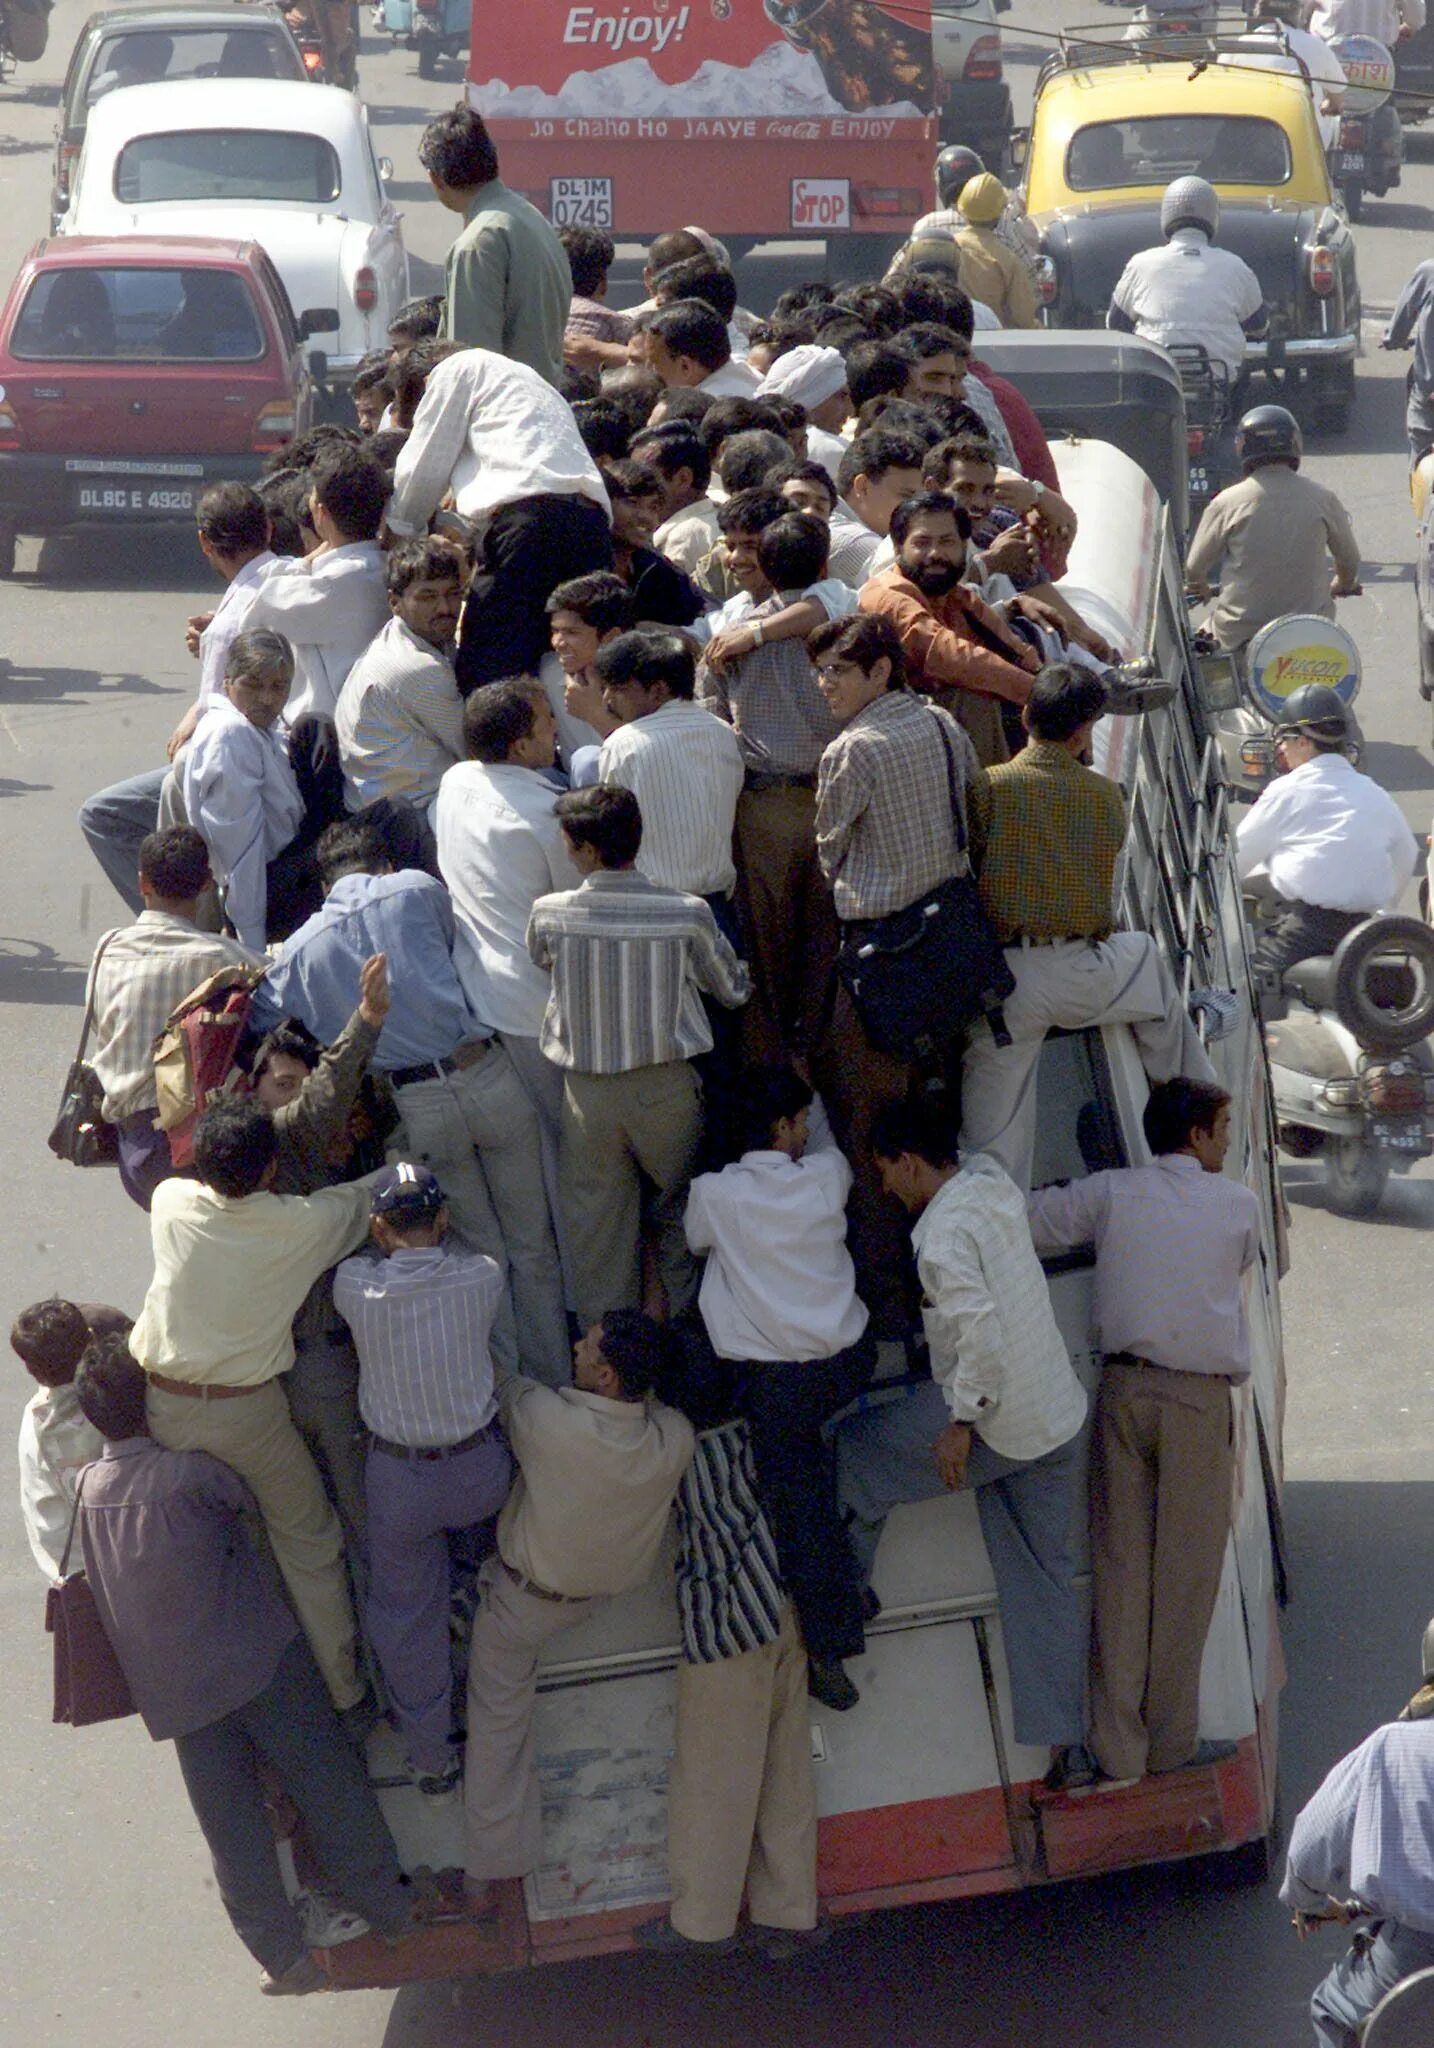 Переполненный автобус в Индии. Индийский автобус переполненный людьми. Час пик в Индии. Маршрутка в Индии. Народу в дом набилось битком